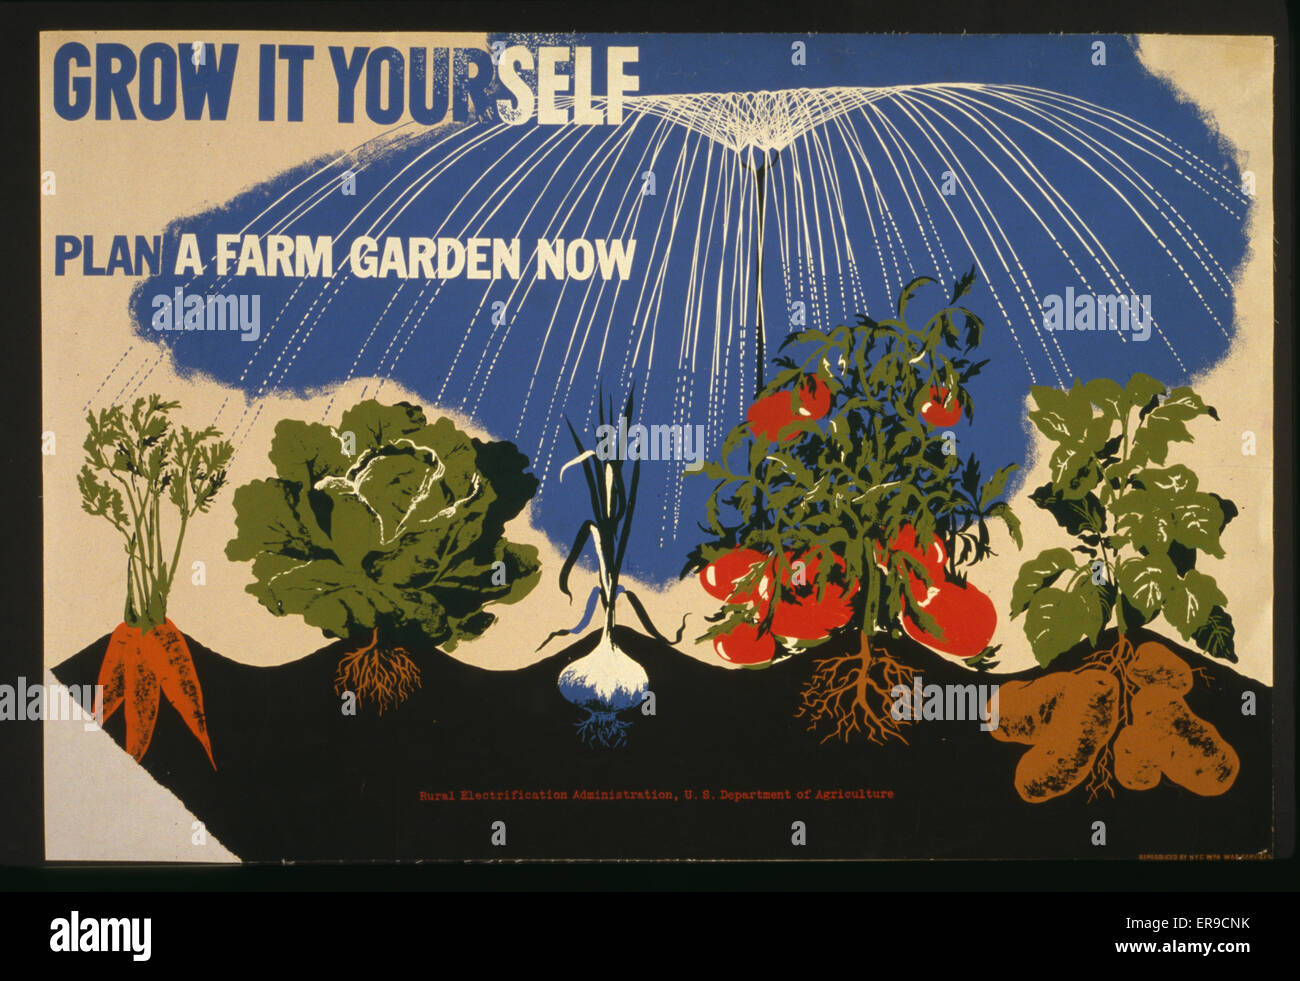 Wachsen Sie es selbst Plan ein Bauerngarten nun. Plakat für das US Department of Agriculture Sieg Gärten zu fördern, zeigen, Karotten, Kopfsalat, Mais, Tomaten und Kartoffeln wachsen. Datum zwischen 1941 und 1943. Stockfoto